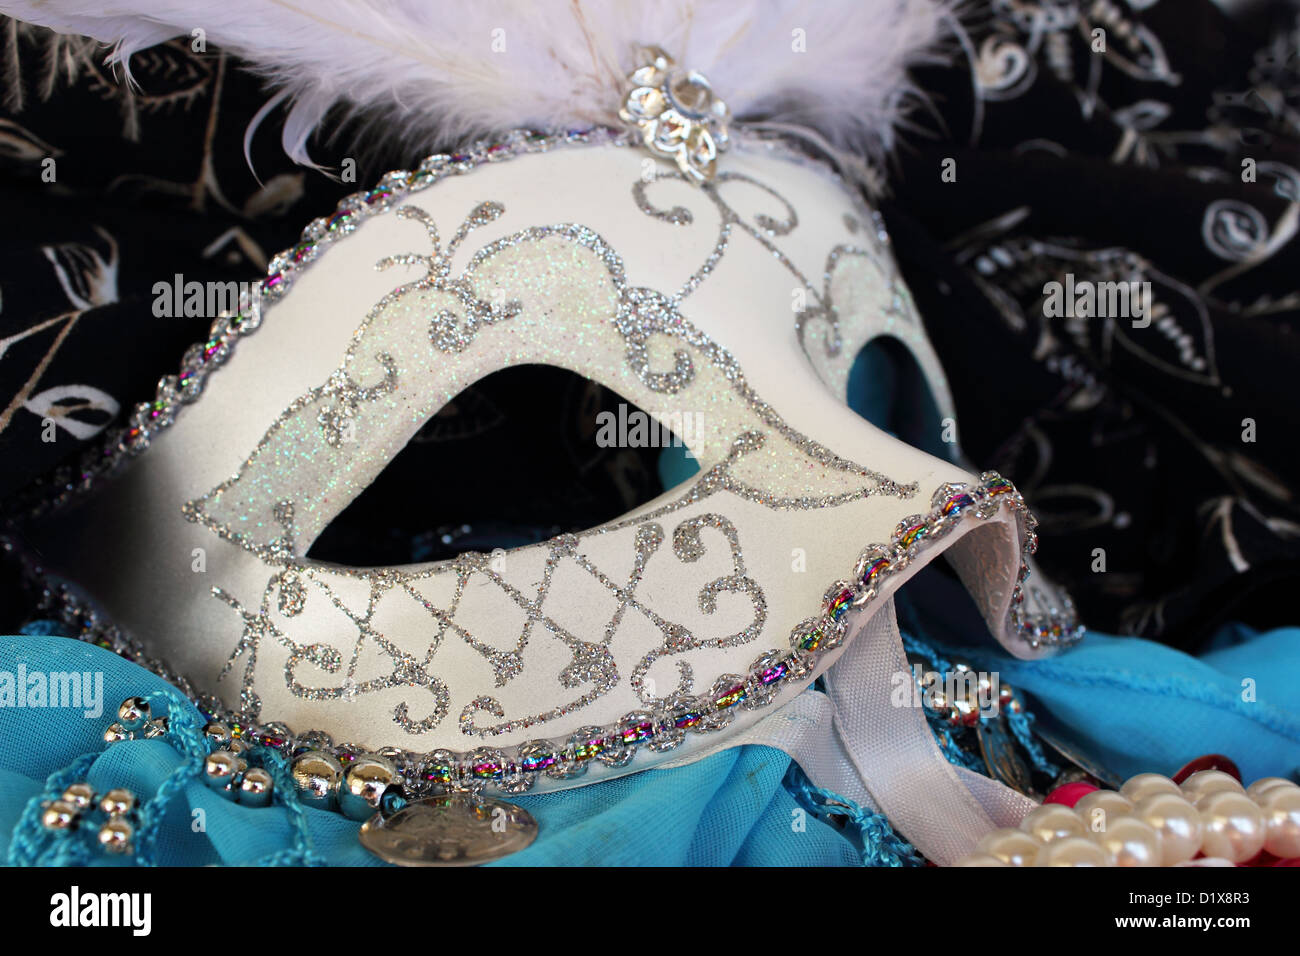 Ein Masquerade Ball Maske mit Glitzer verziert und Rhinestons umgeben von Party-Perlen, Armreifen und Stoffe Stockfoto